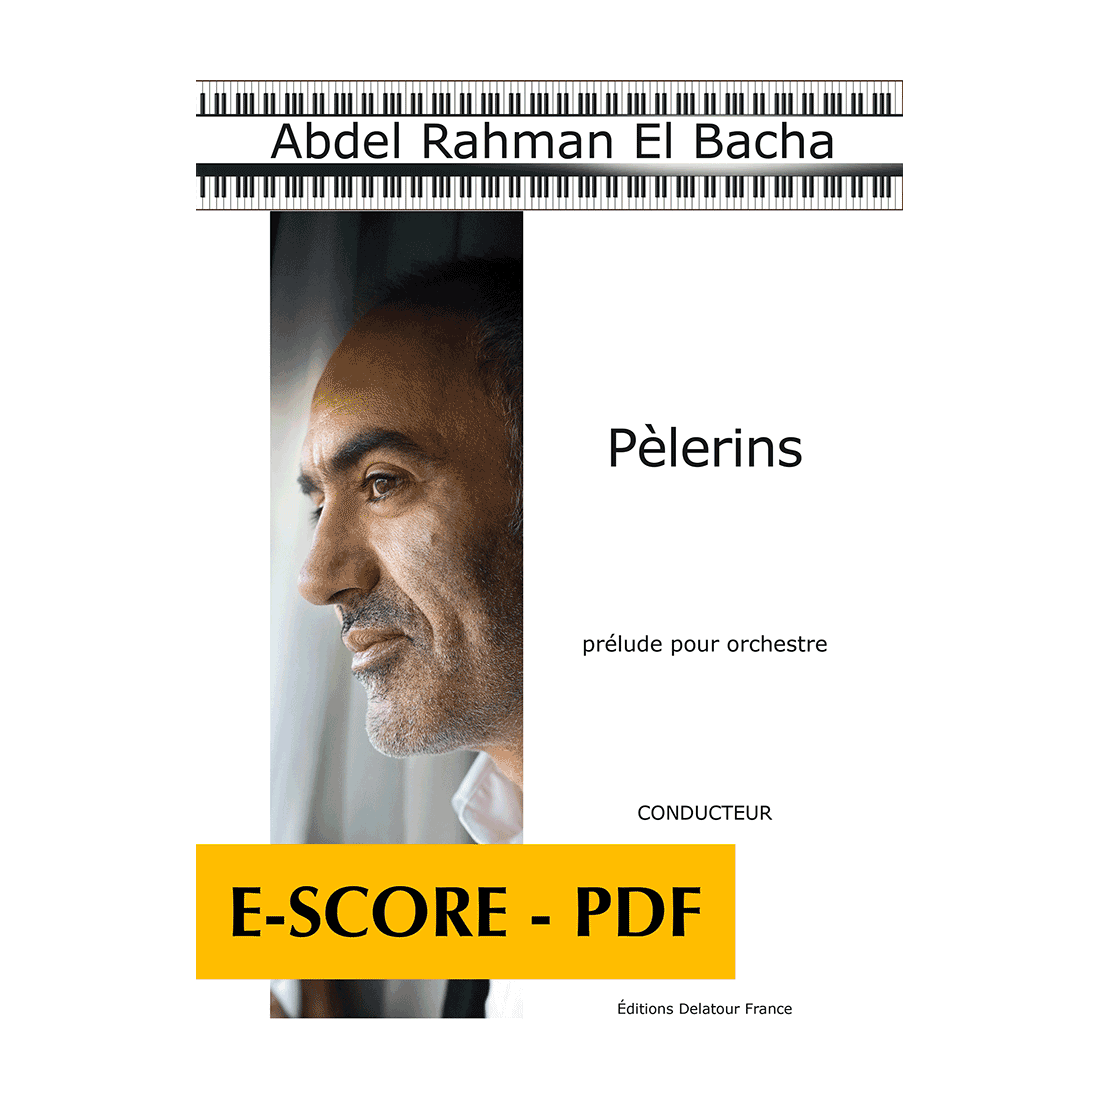 Pèlerins - Prelude for orchestra (FULL SCORE) - E-score PDF